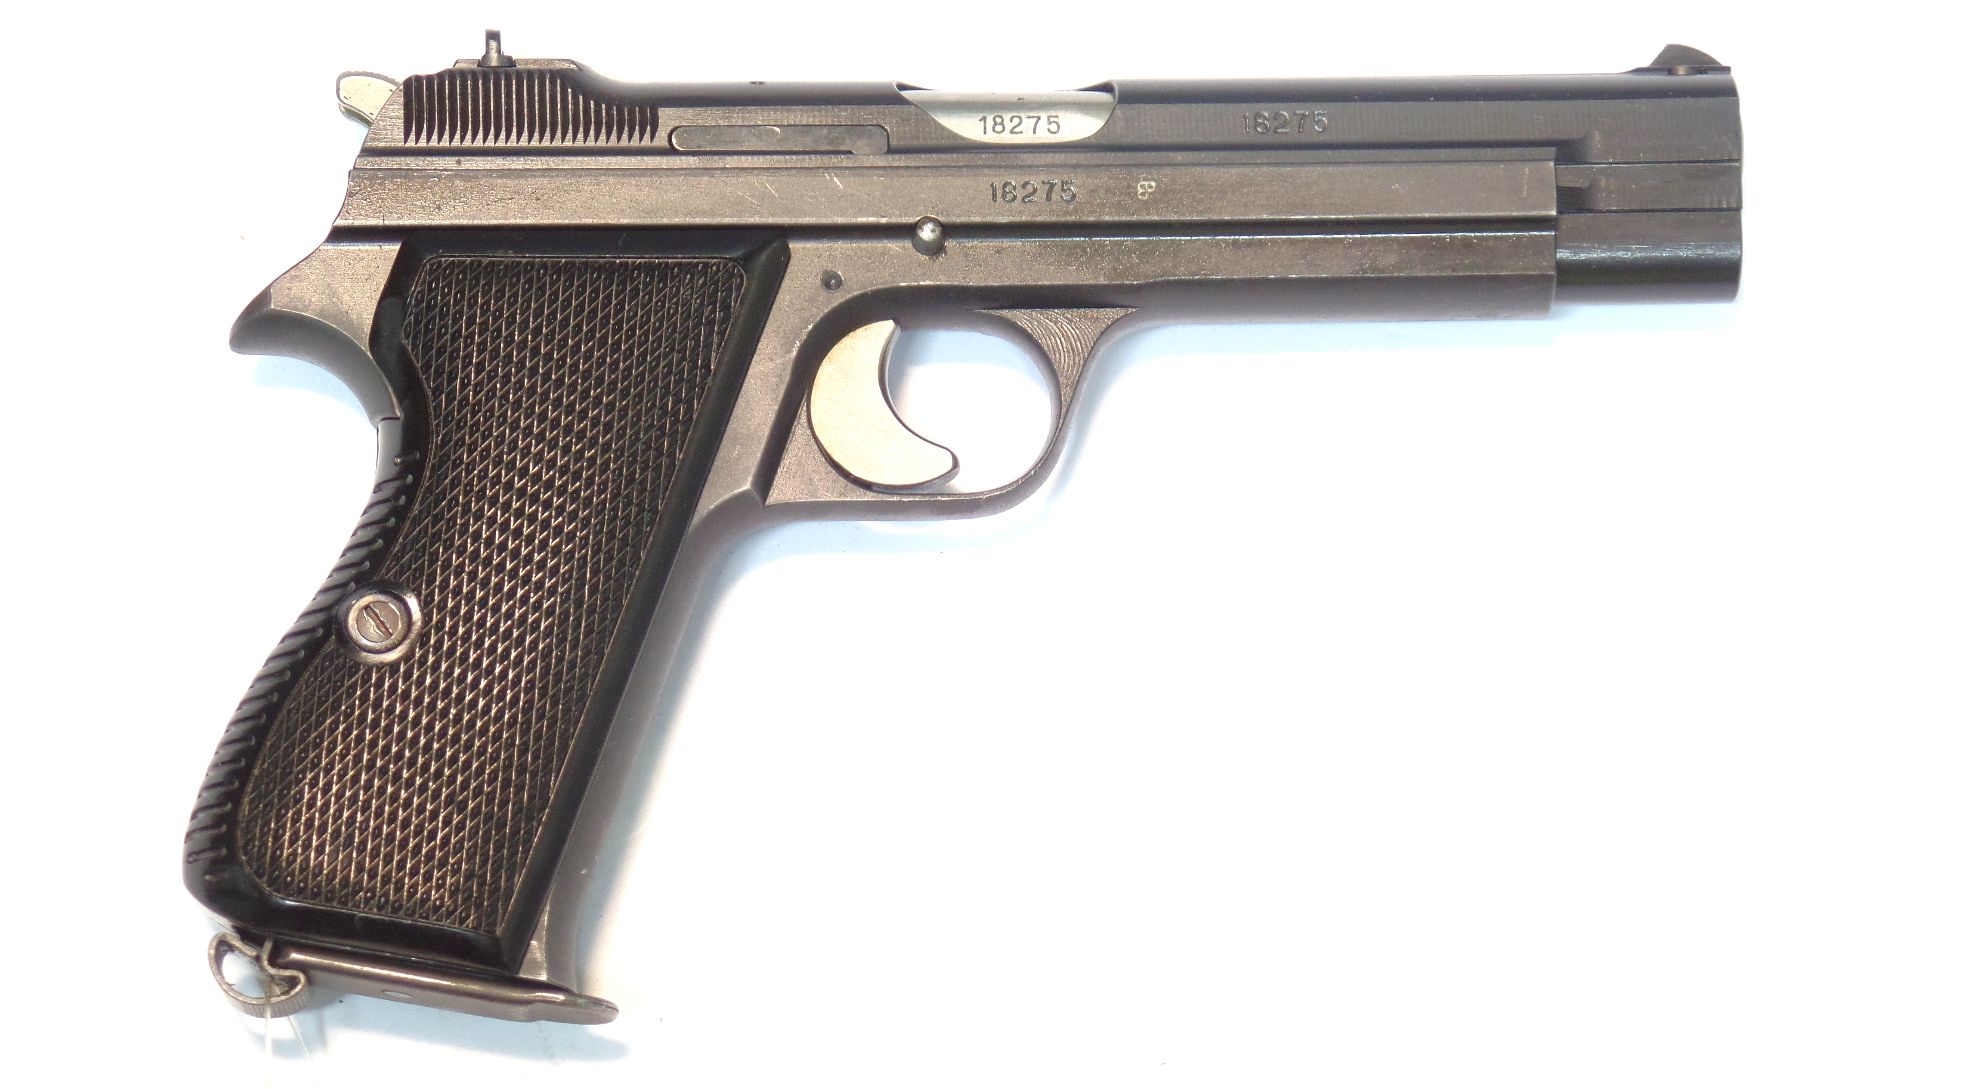 SIG P210 (M49) calibre 9 Para